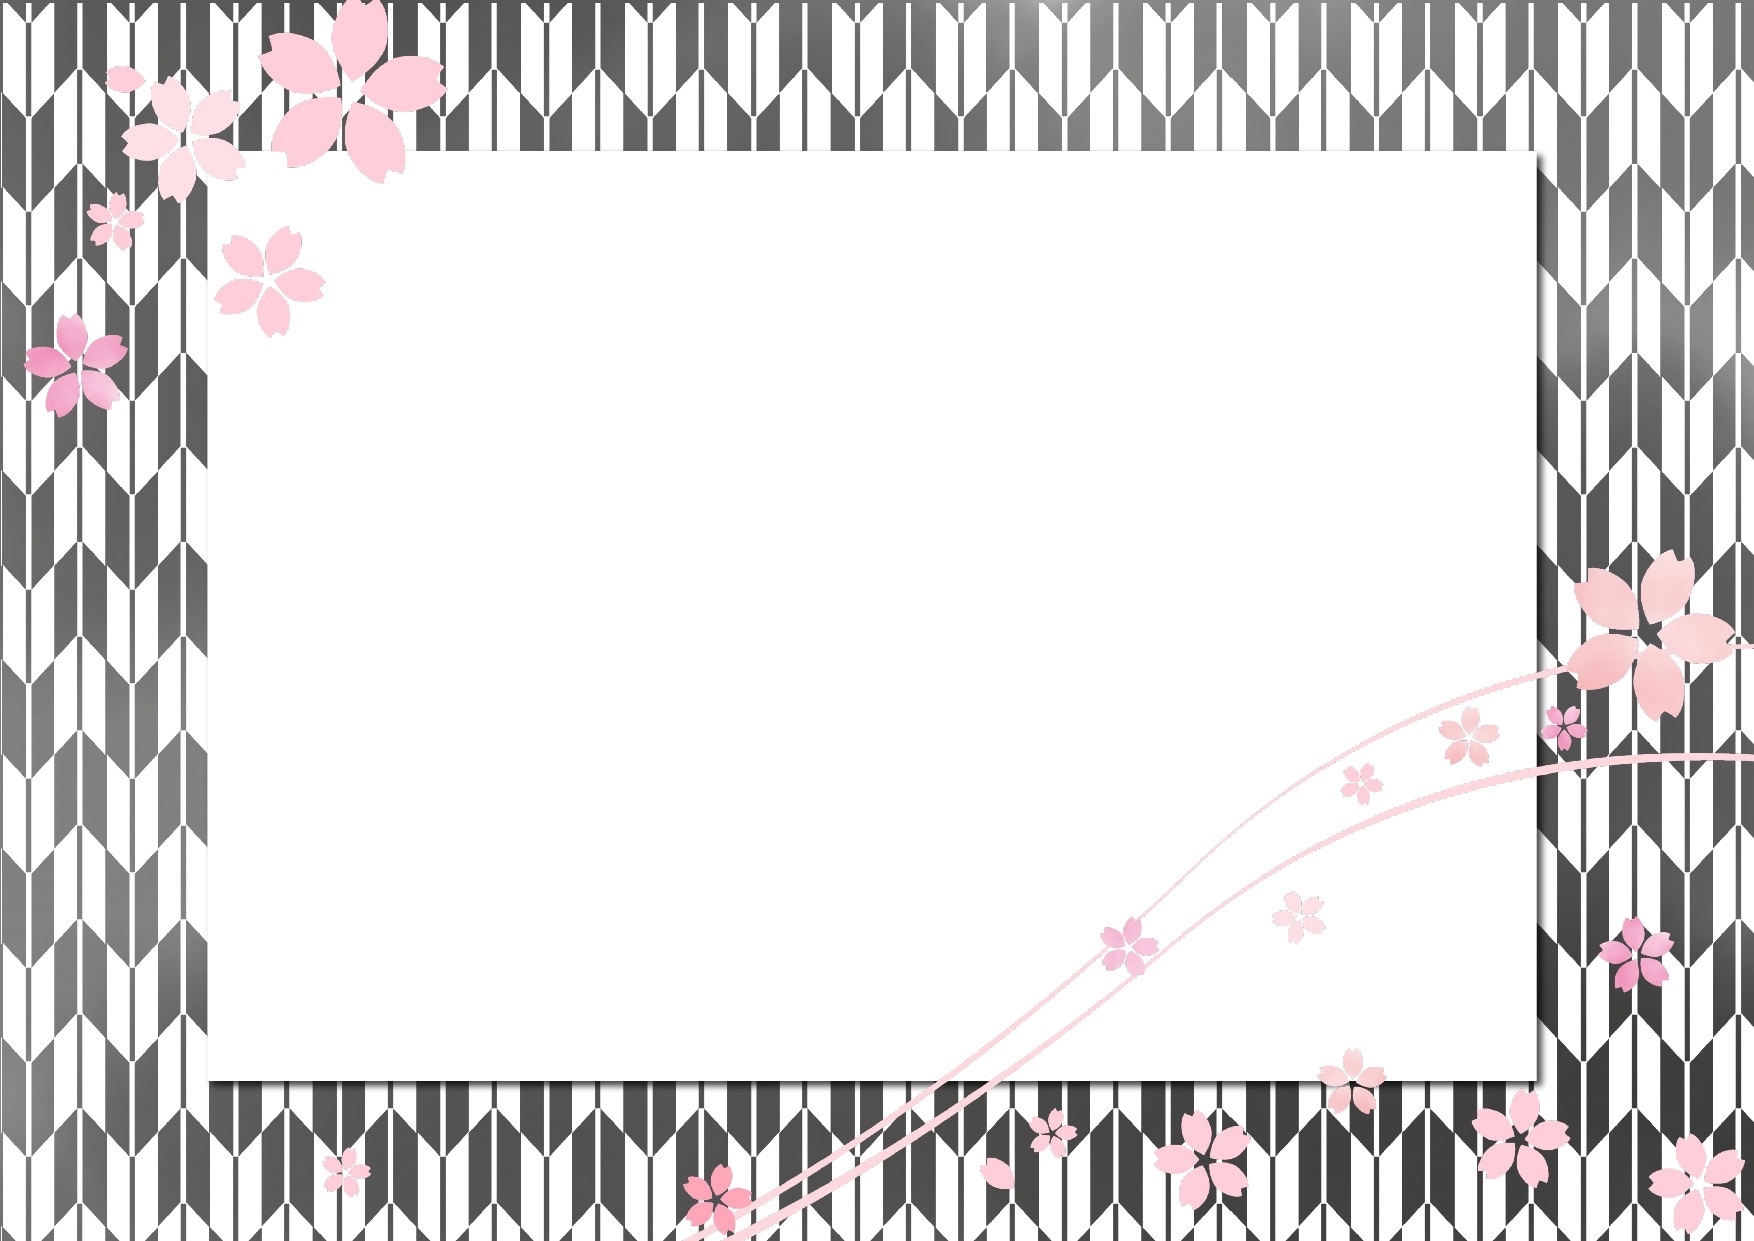 モノクロ 白黒 和柄と桜 さくら のフレーム 無料ダウンロード かわいい 雛形 テンプレート素材 無料ダウンロード かわいい 雛形 テンプレート素材